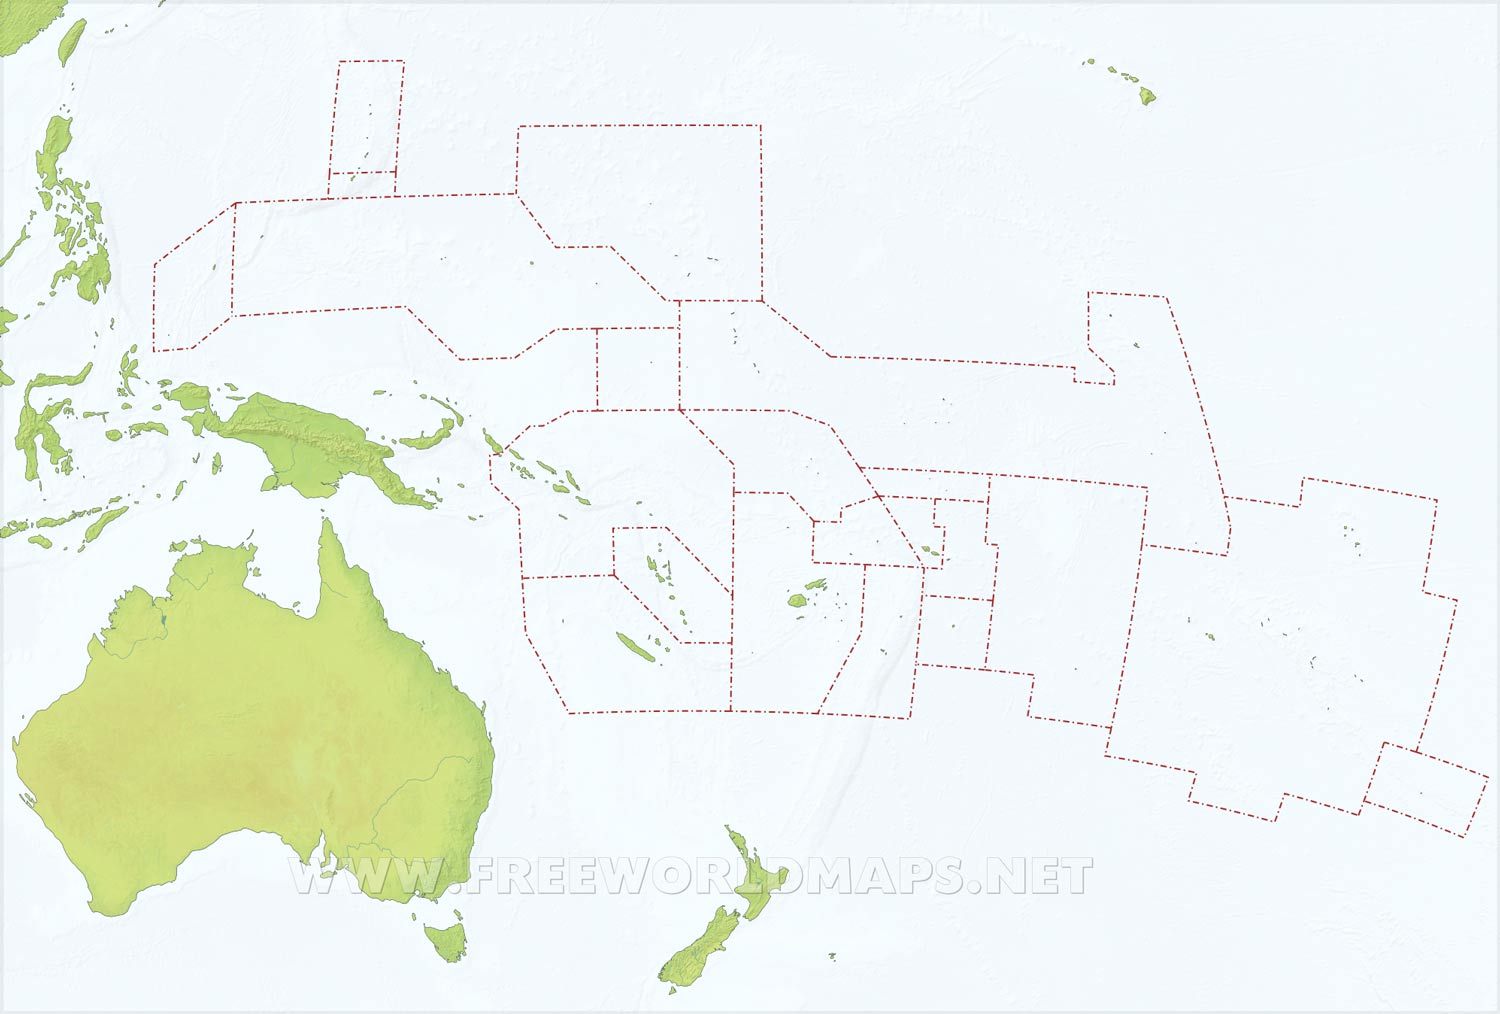 Oceania maps â